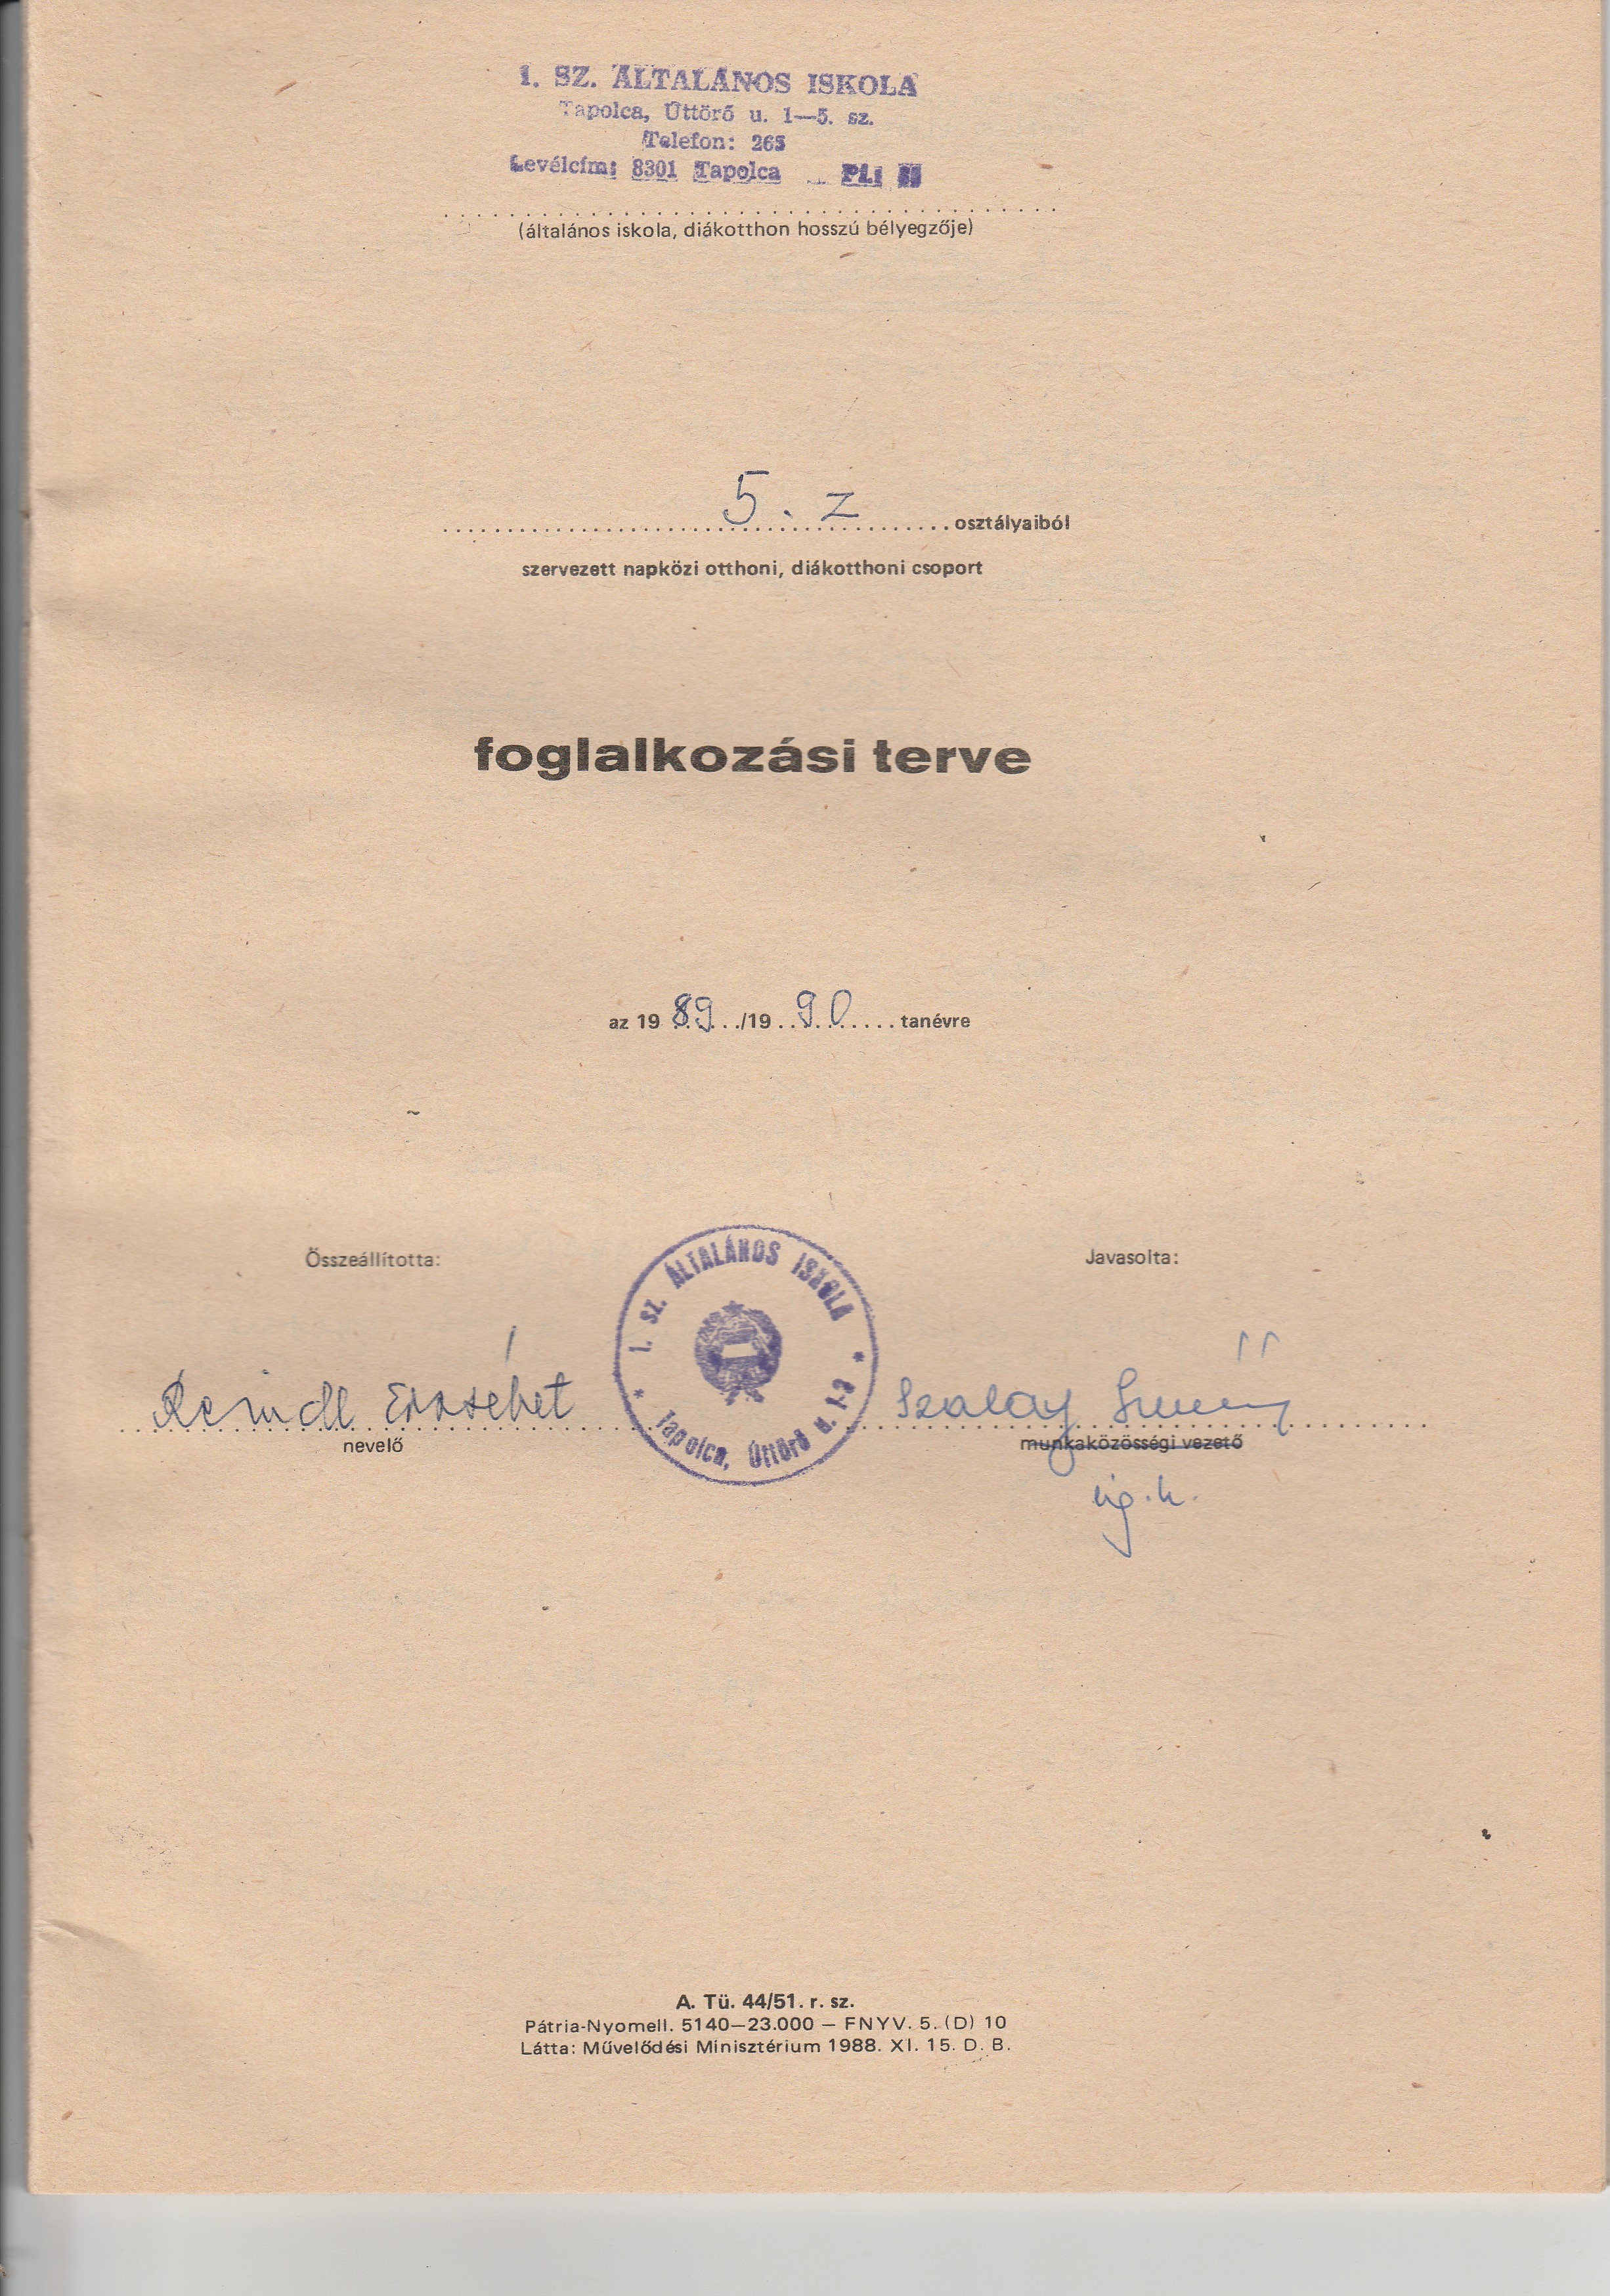 5. osztályos napközis foglalkozási terv kiegészítő része (Tapolcai Városi Múzeum CC BY-NC-SA)